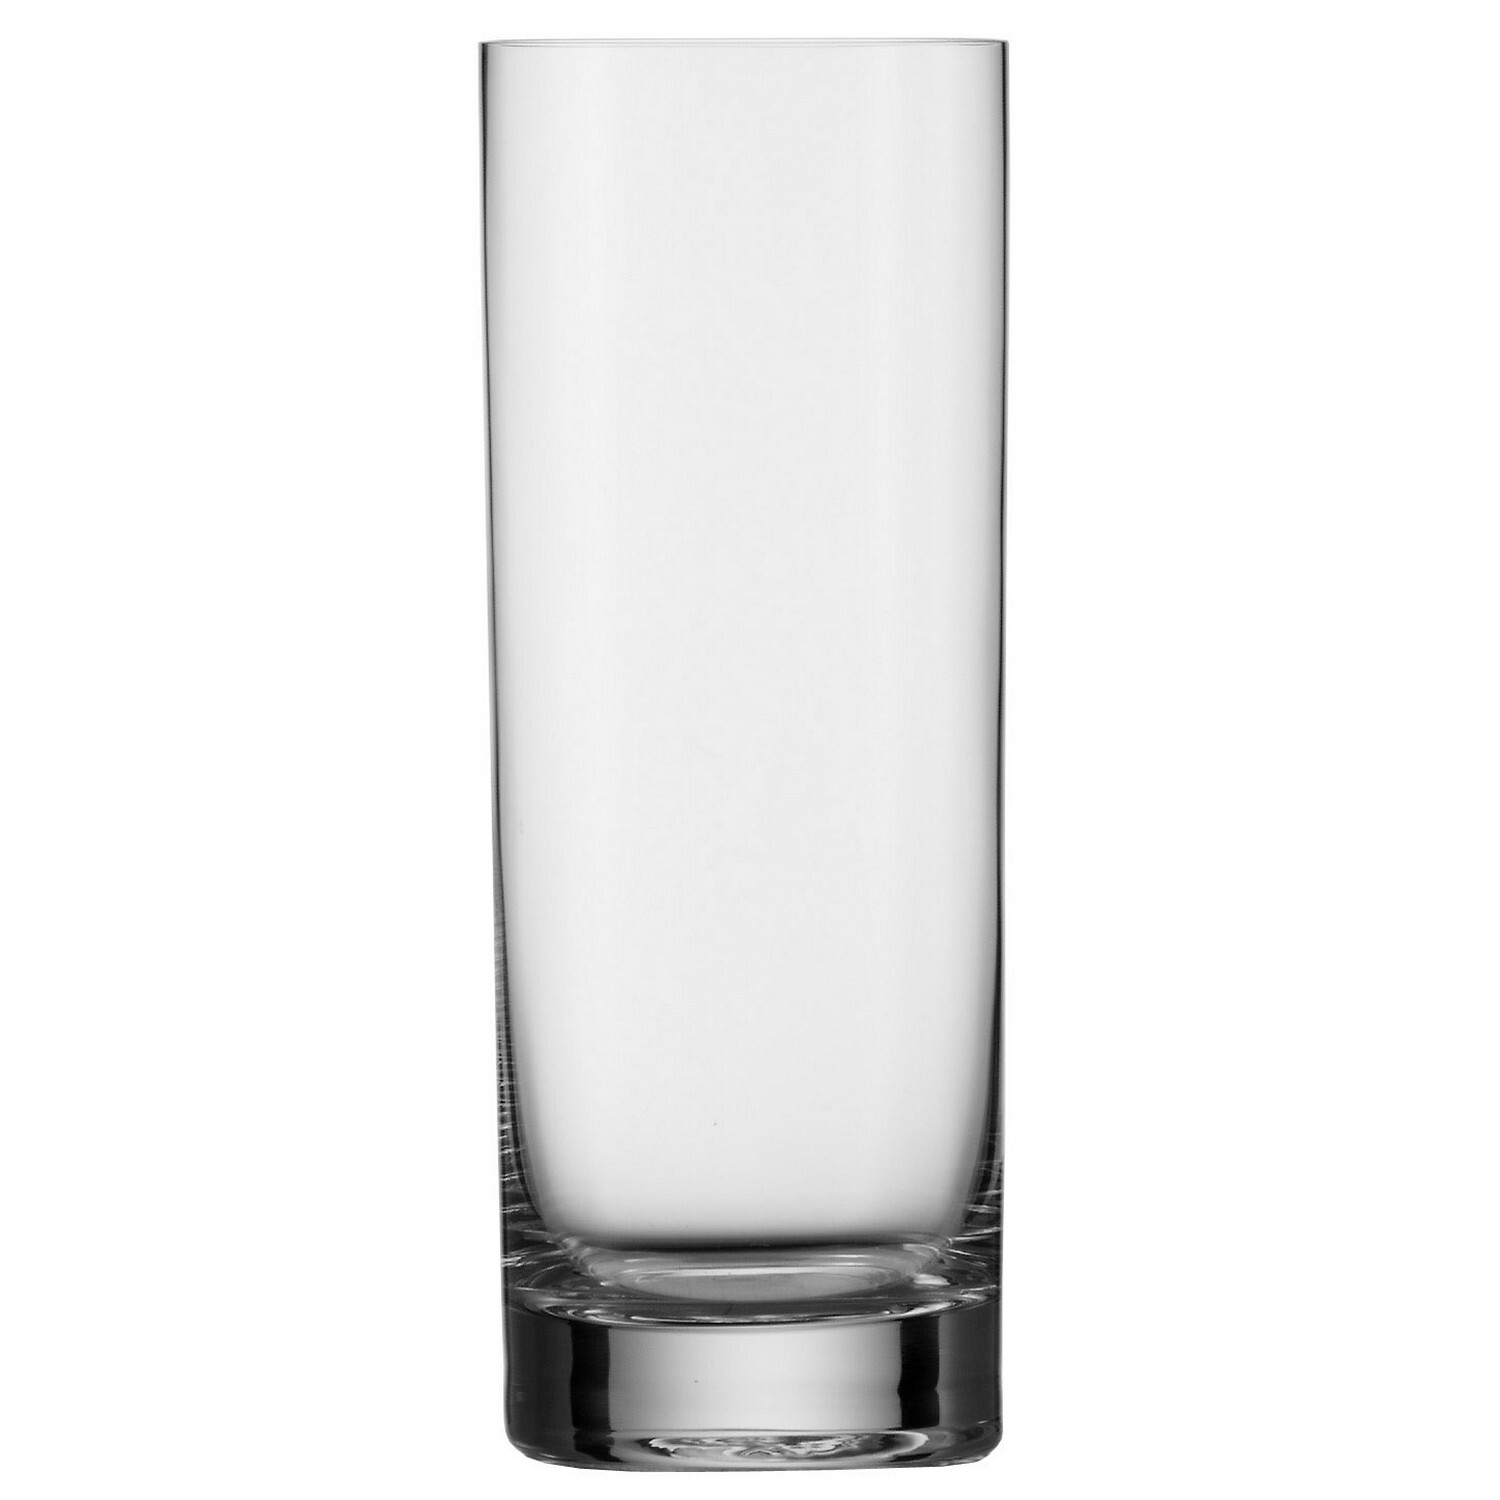 Хайбол Stoelzle Нью-Йорк Бар 450мл, 66х66х178мм, хрустальное стекло, прозрачный